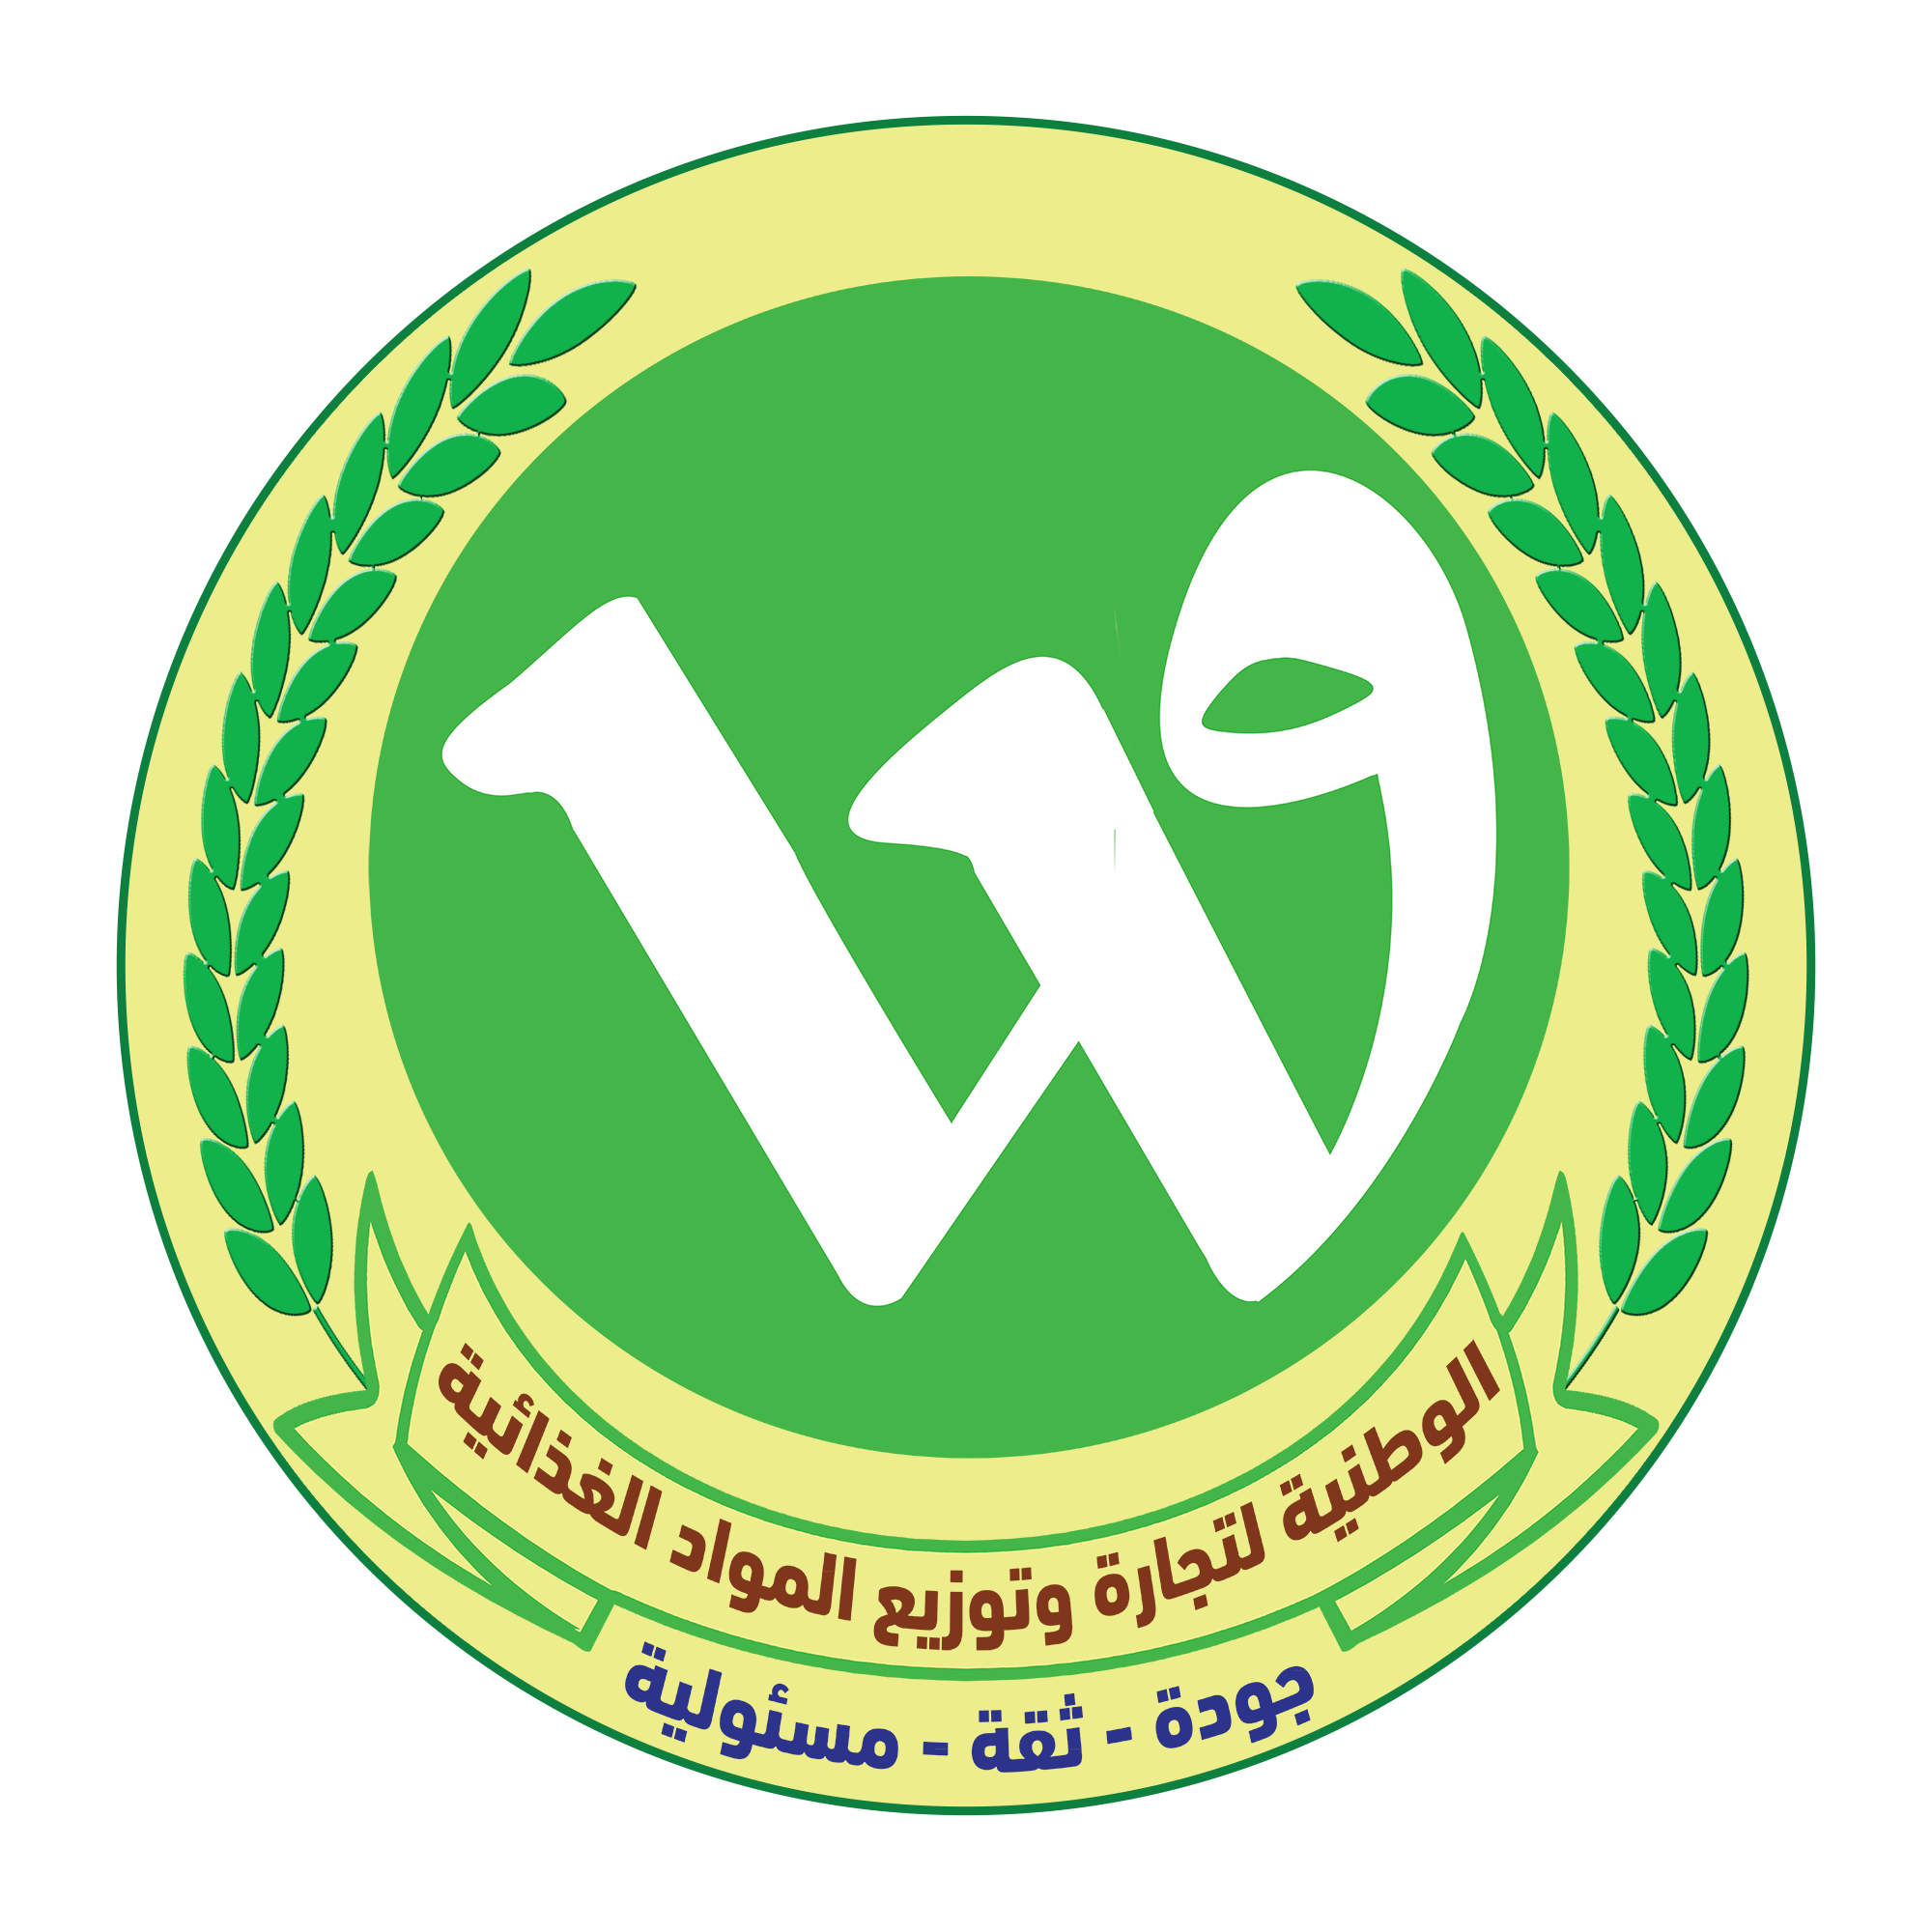 Watania Company